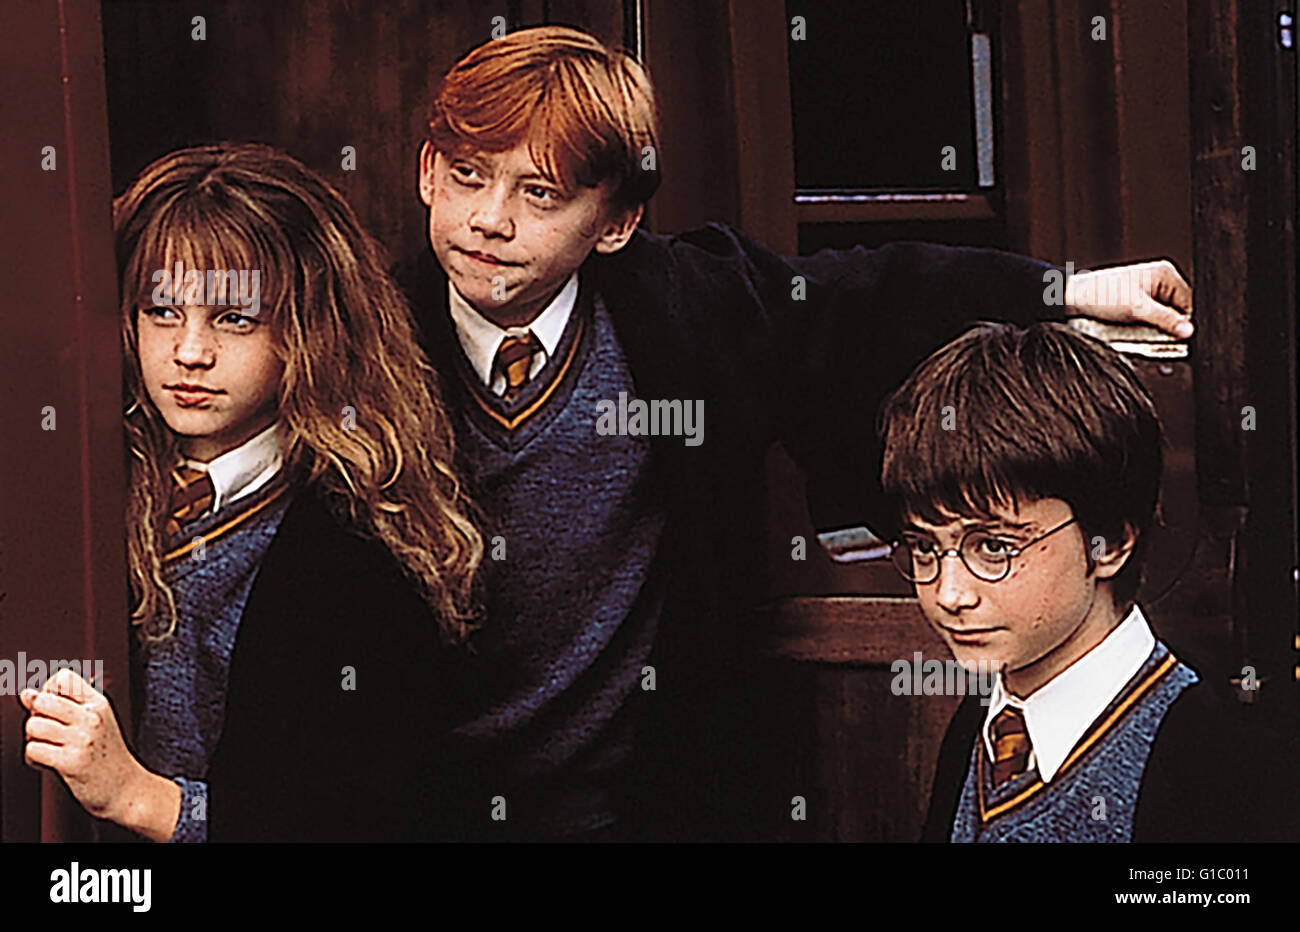 Harry Potter und der Stein der Weisen" / Daniel Radcliffe / Emma Watson /  Rupert Grint / Harry Potter Complete Collection Jahre - / Harry Potter  Zauberer Collection Stock Photo - Alamy